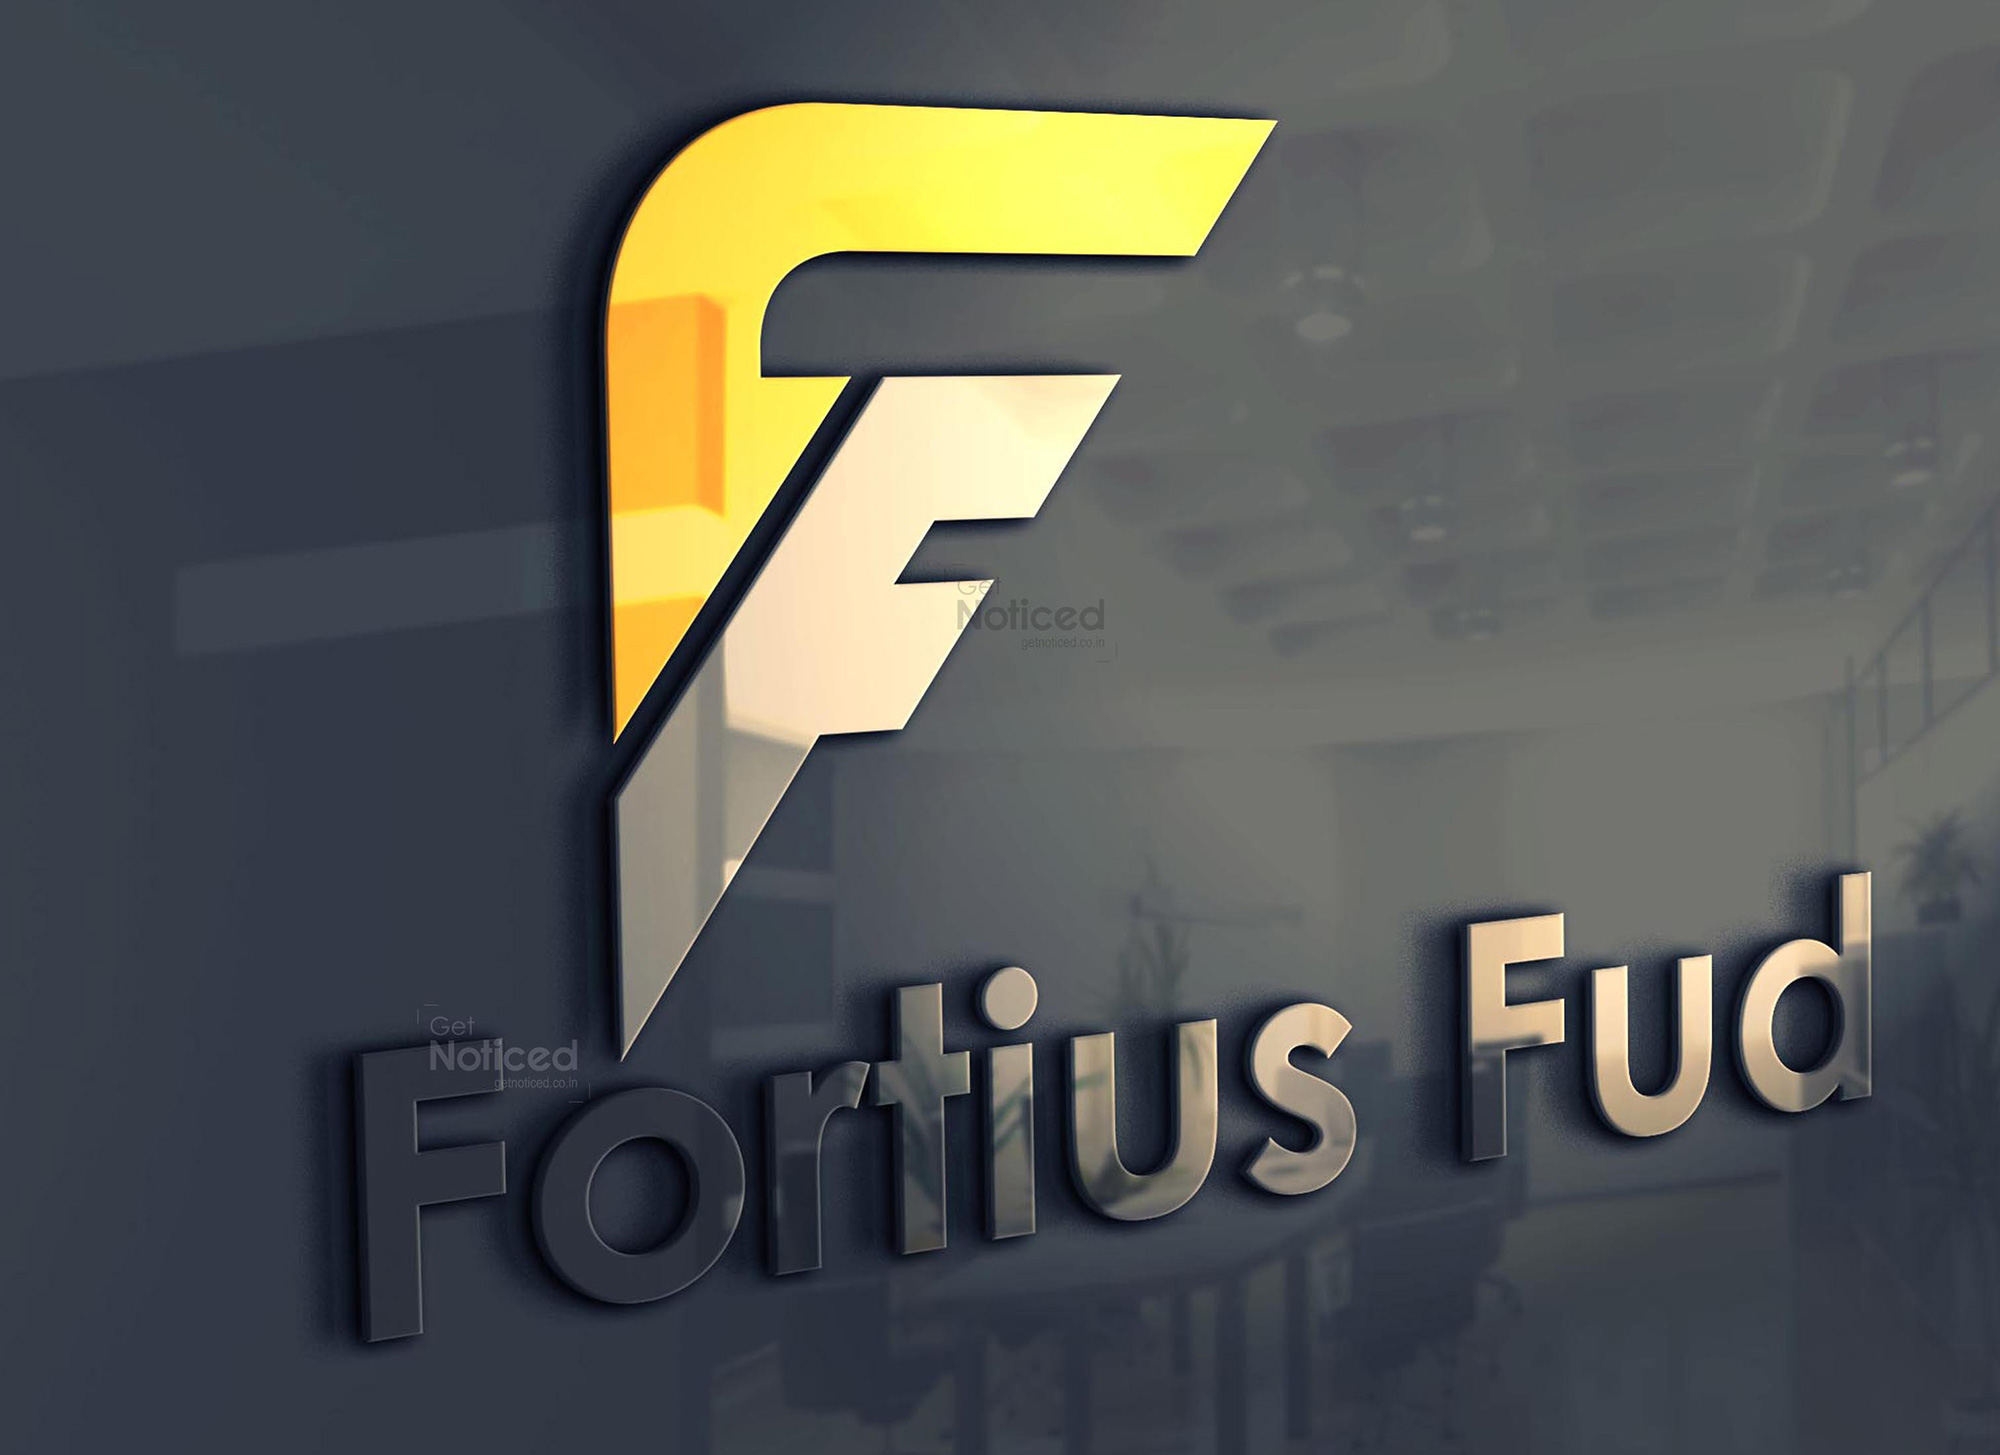 Fortius Fud Logo Design